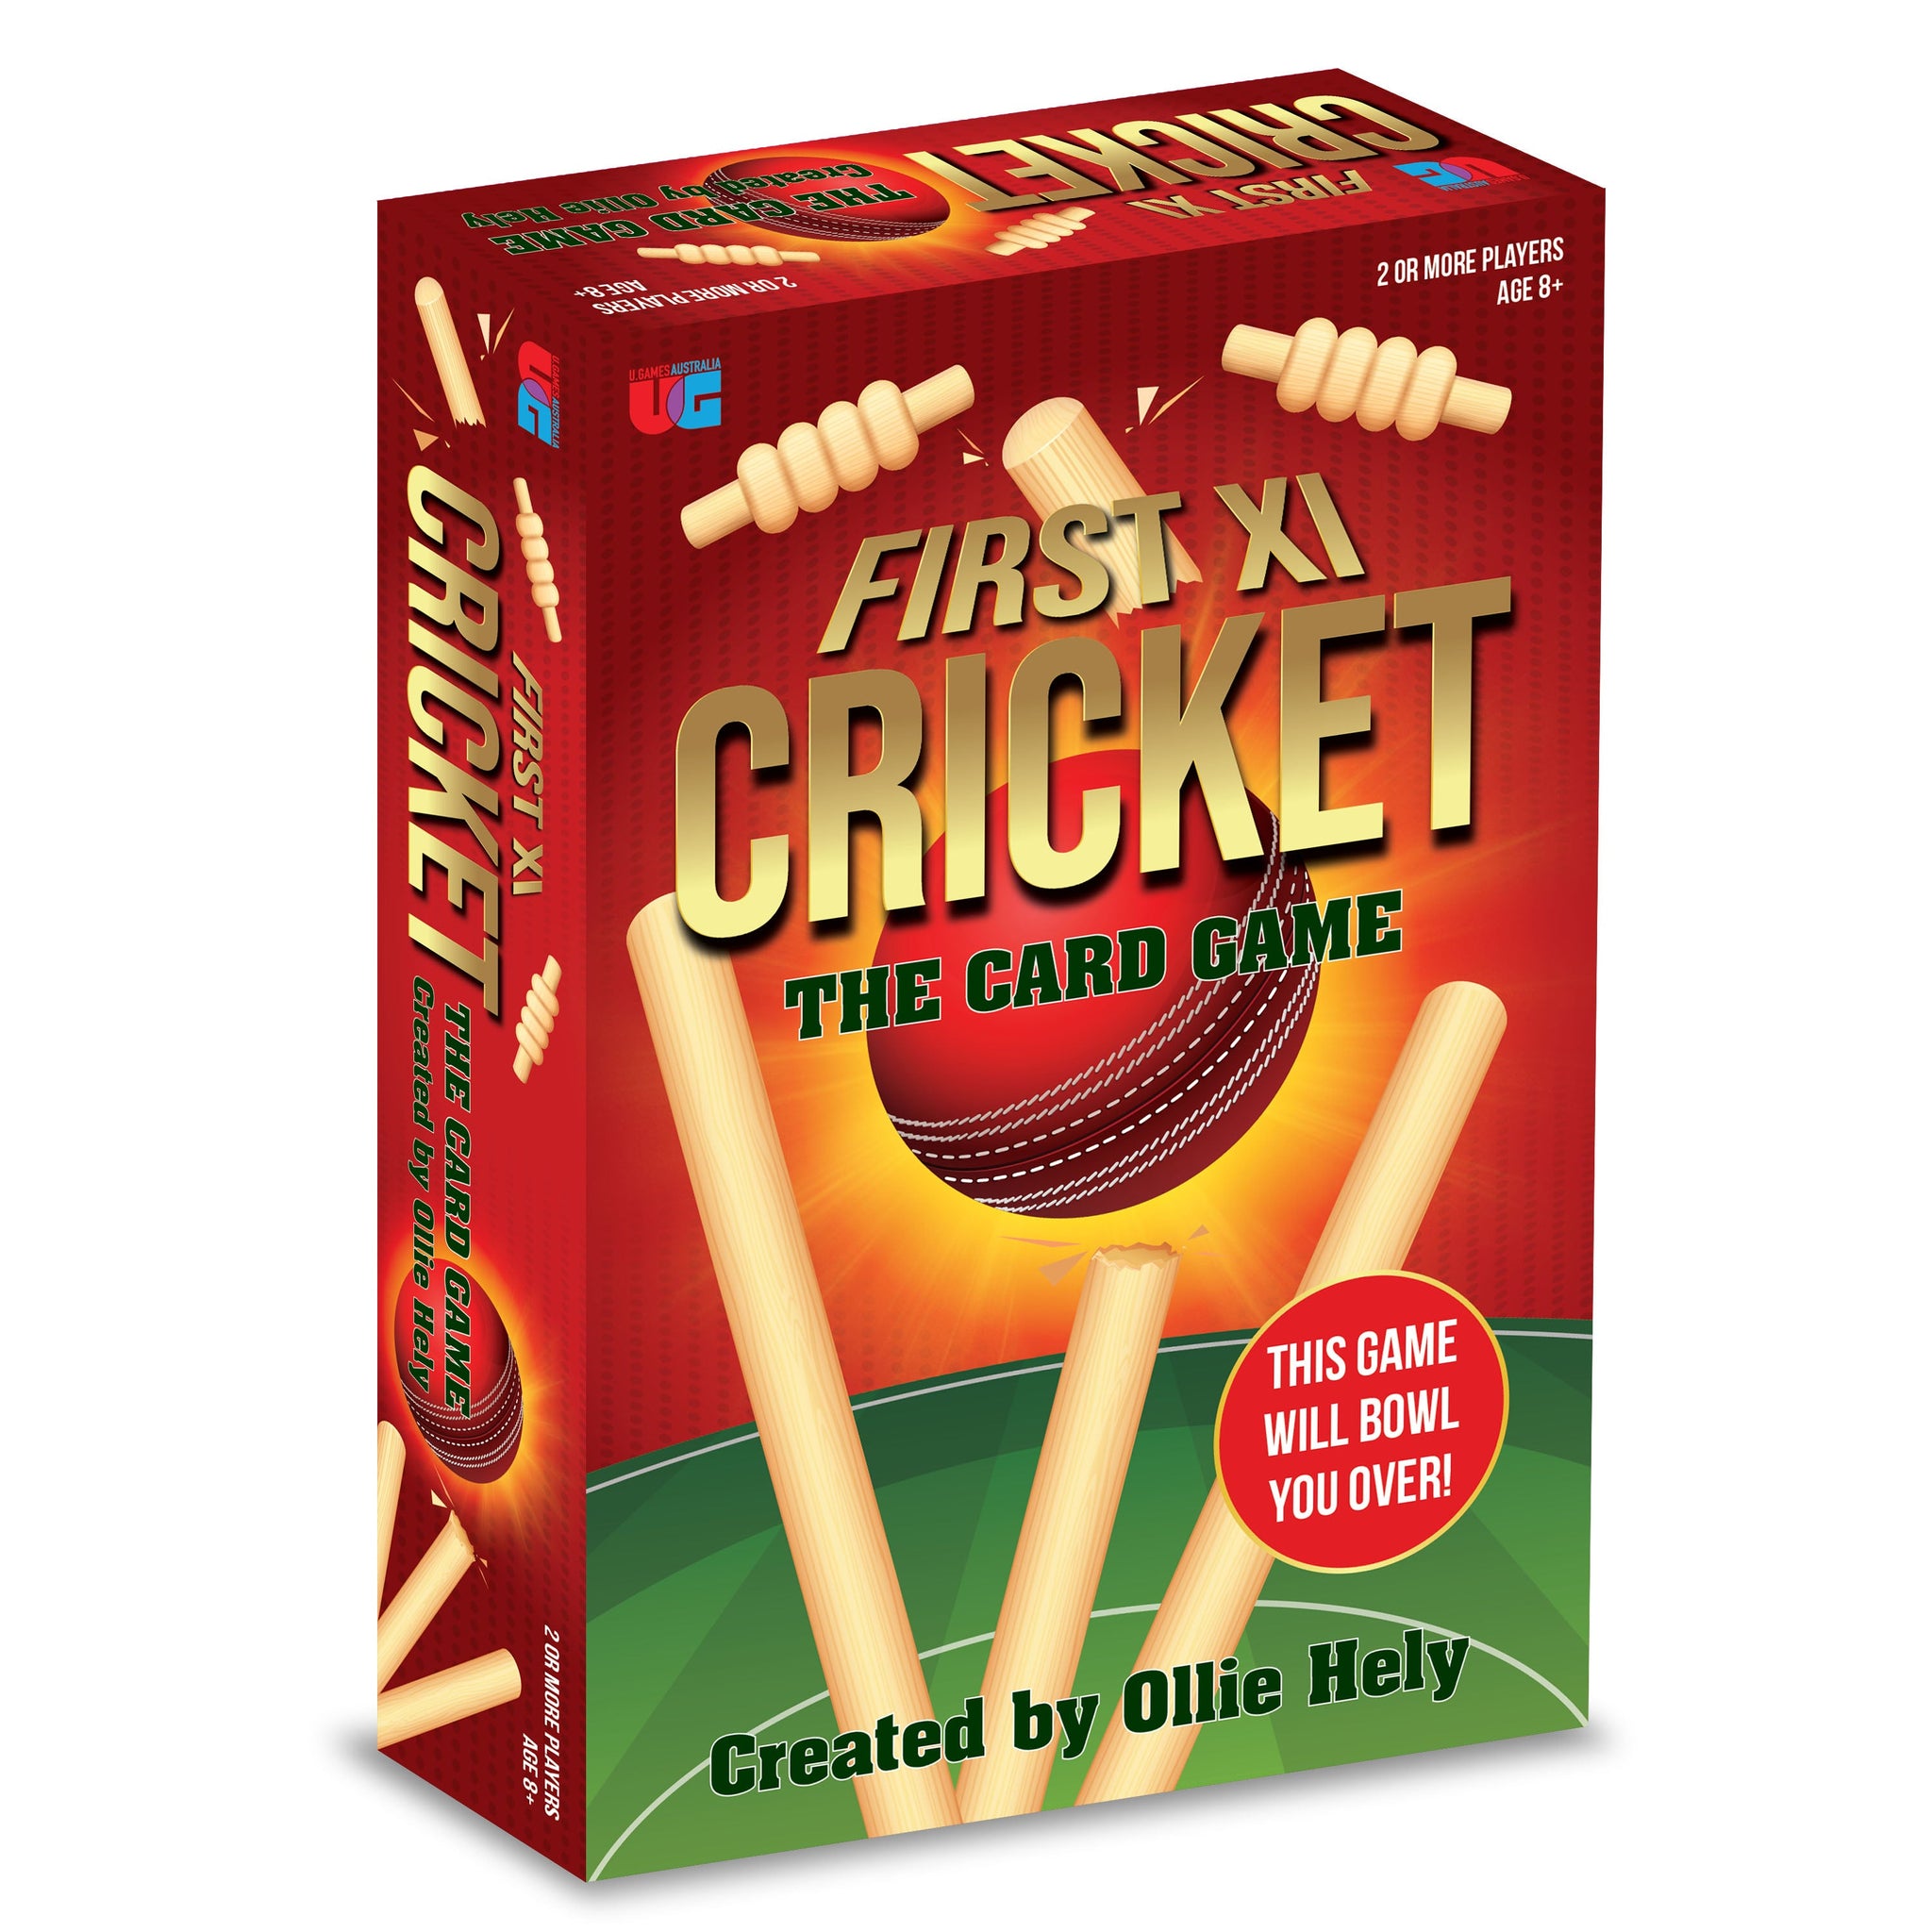 UG First XI Cricket